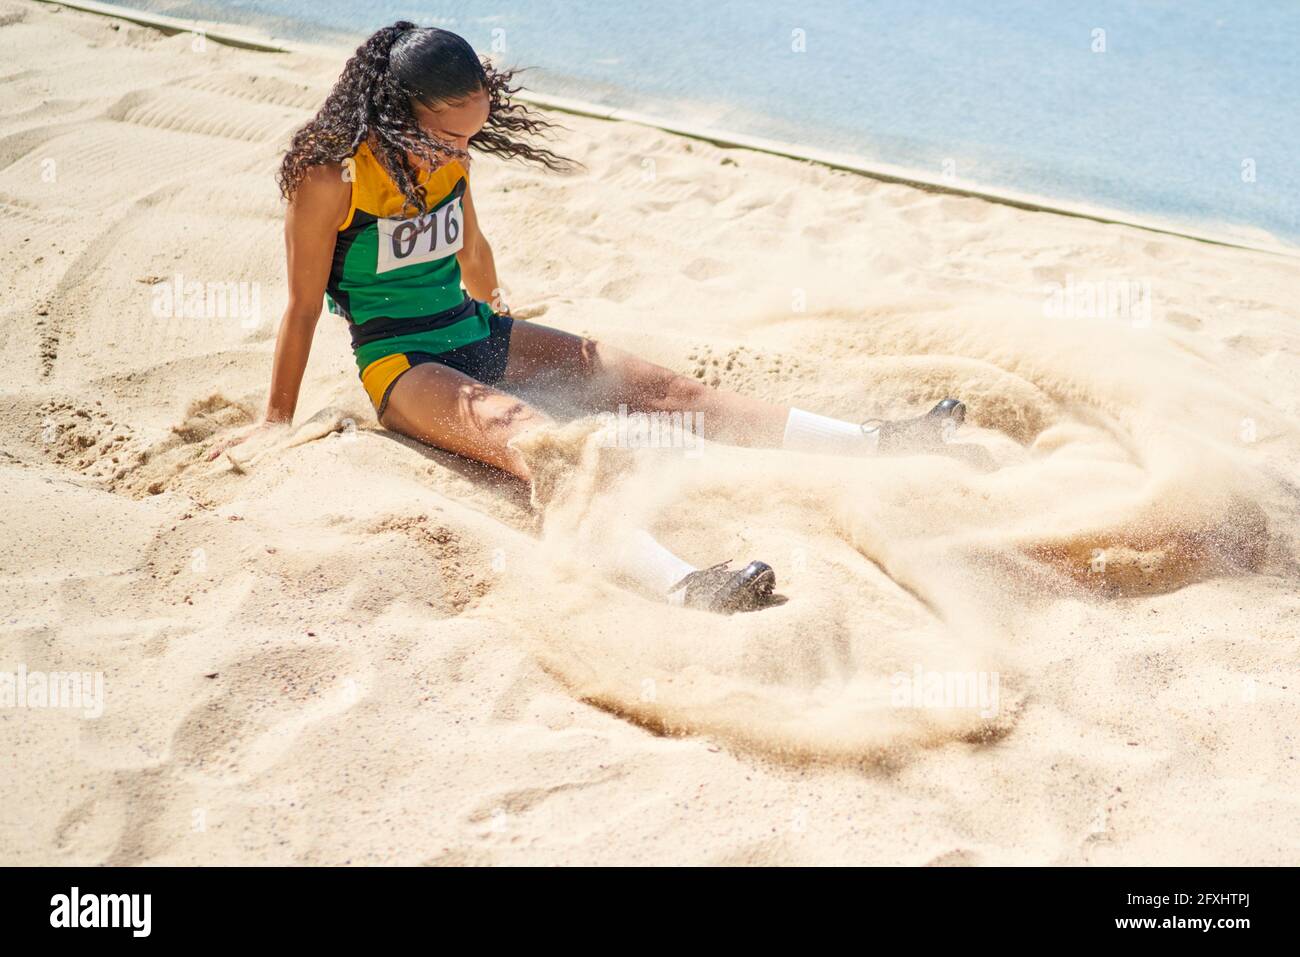 Leichtathletik-Sportlerin, die lange in den Sand springt Stockfoto